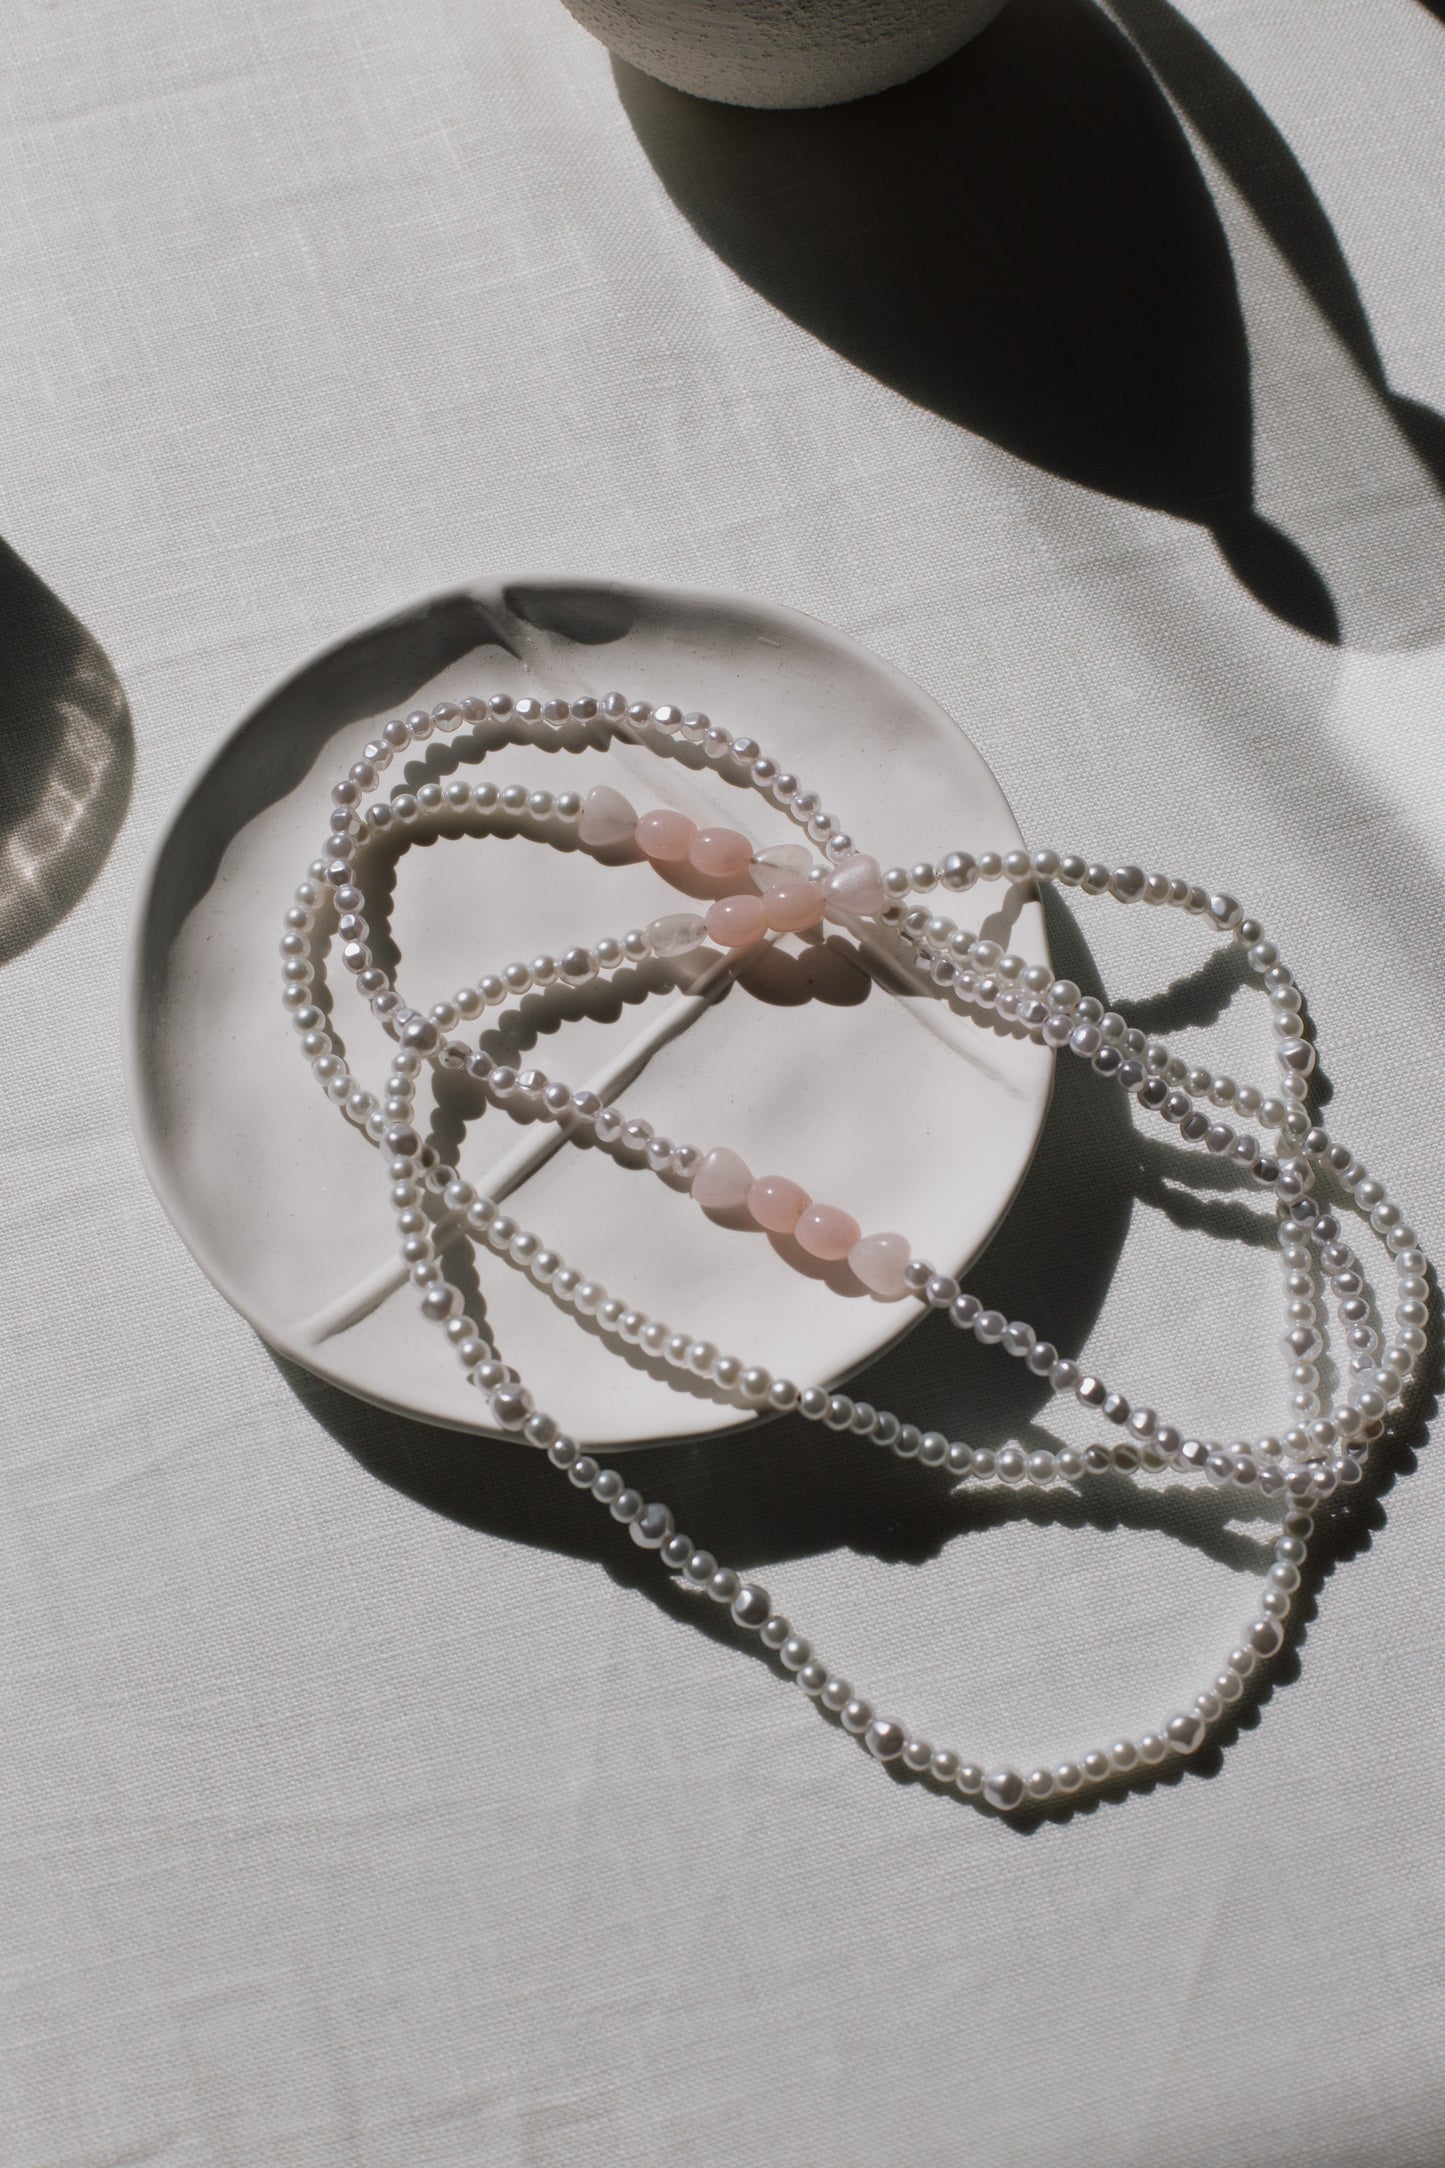 Daniela necklace. Pearls and rose quartz.